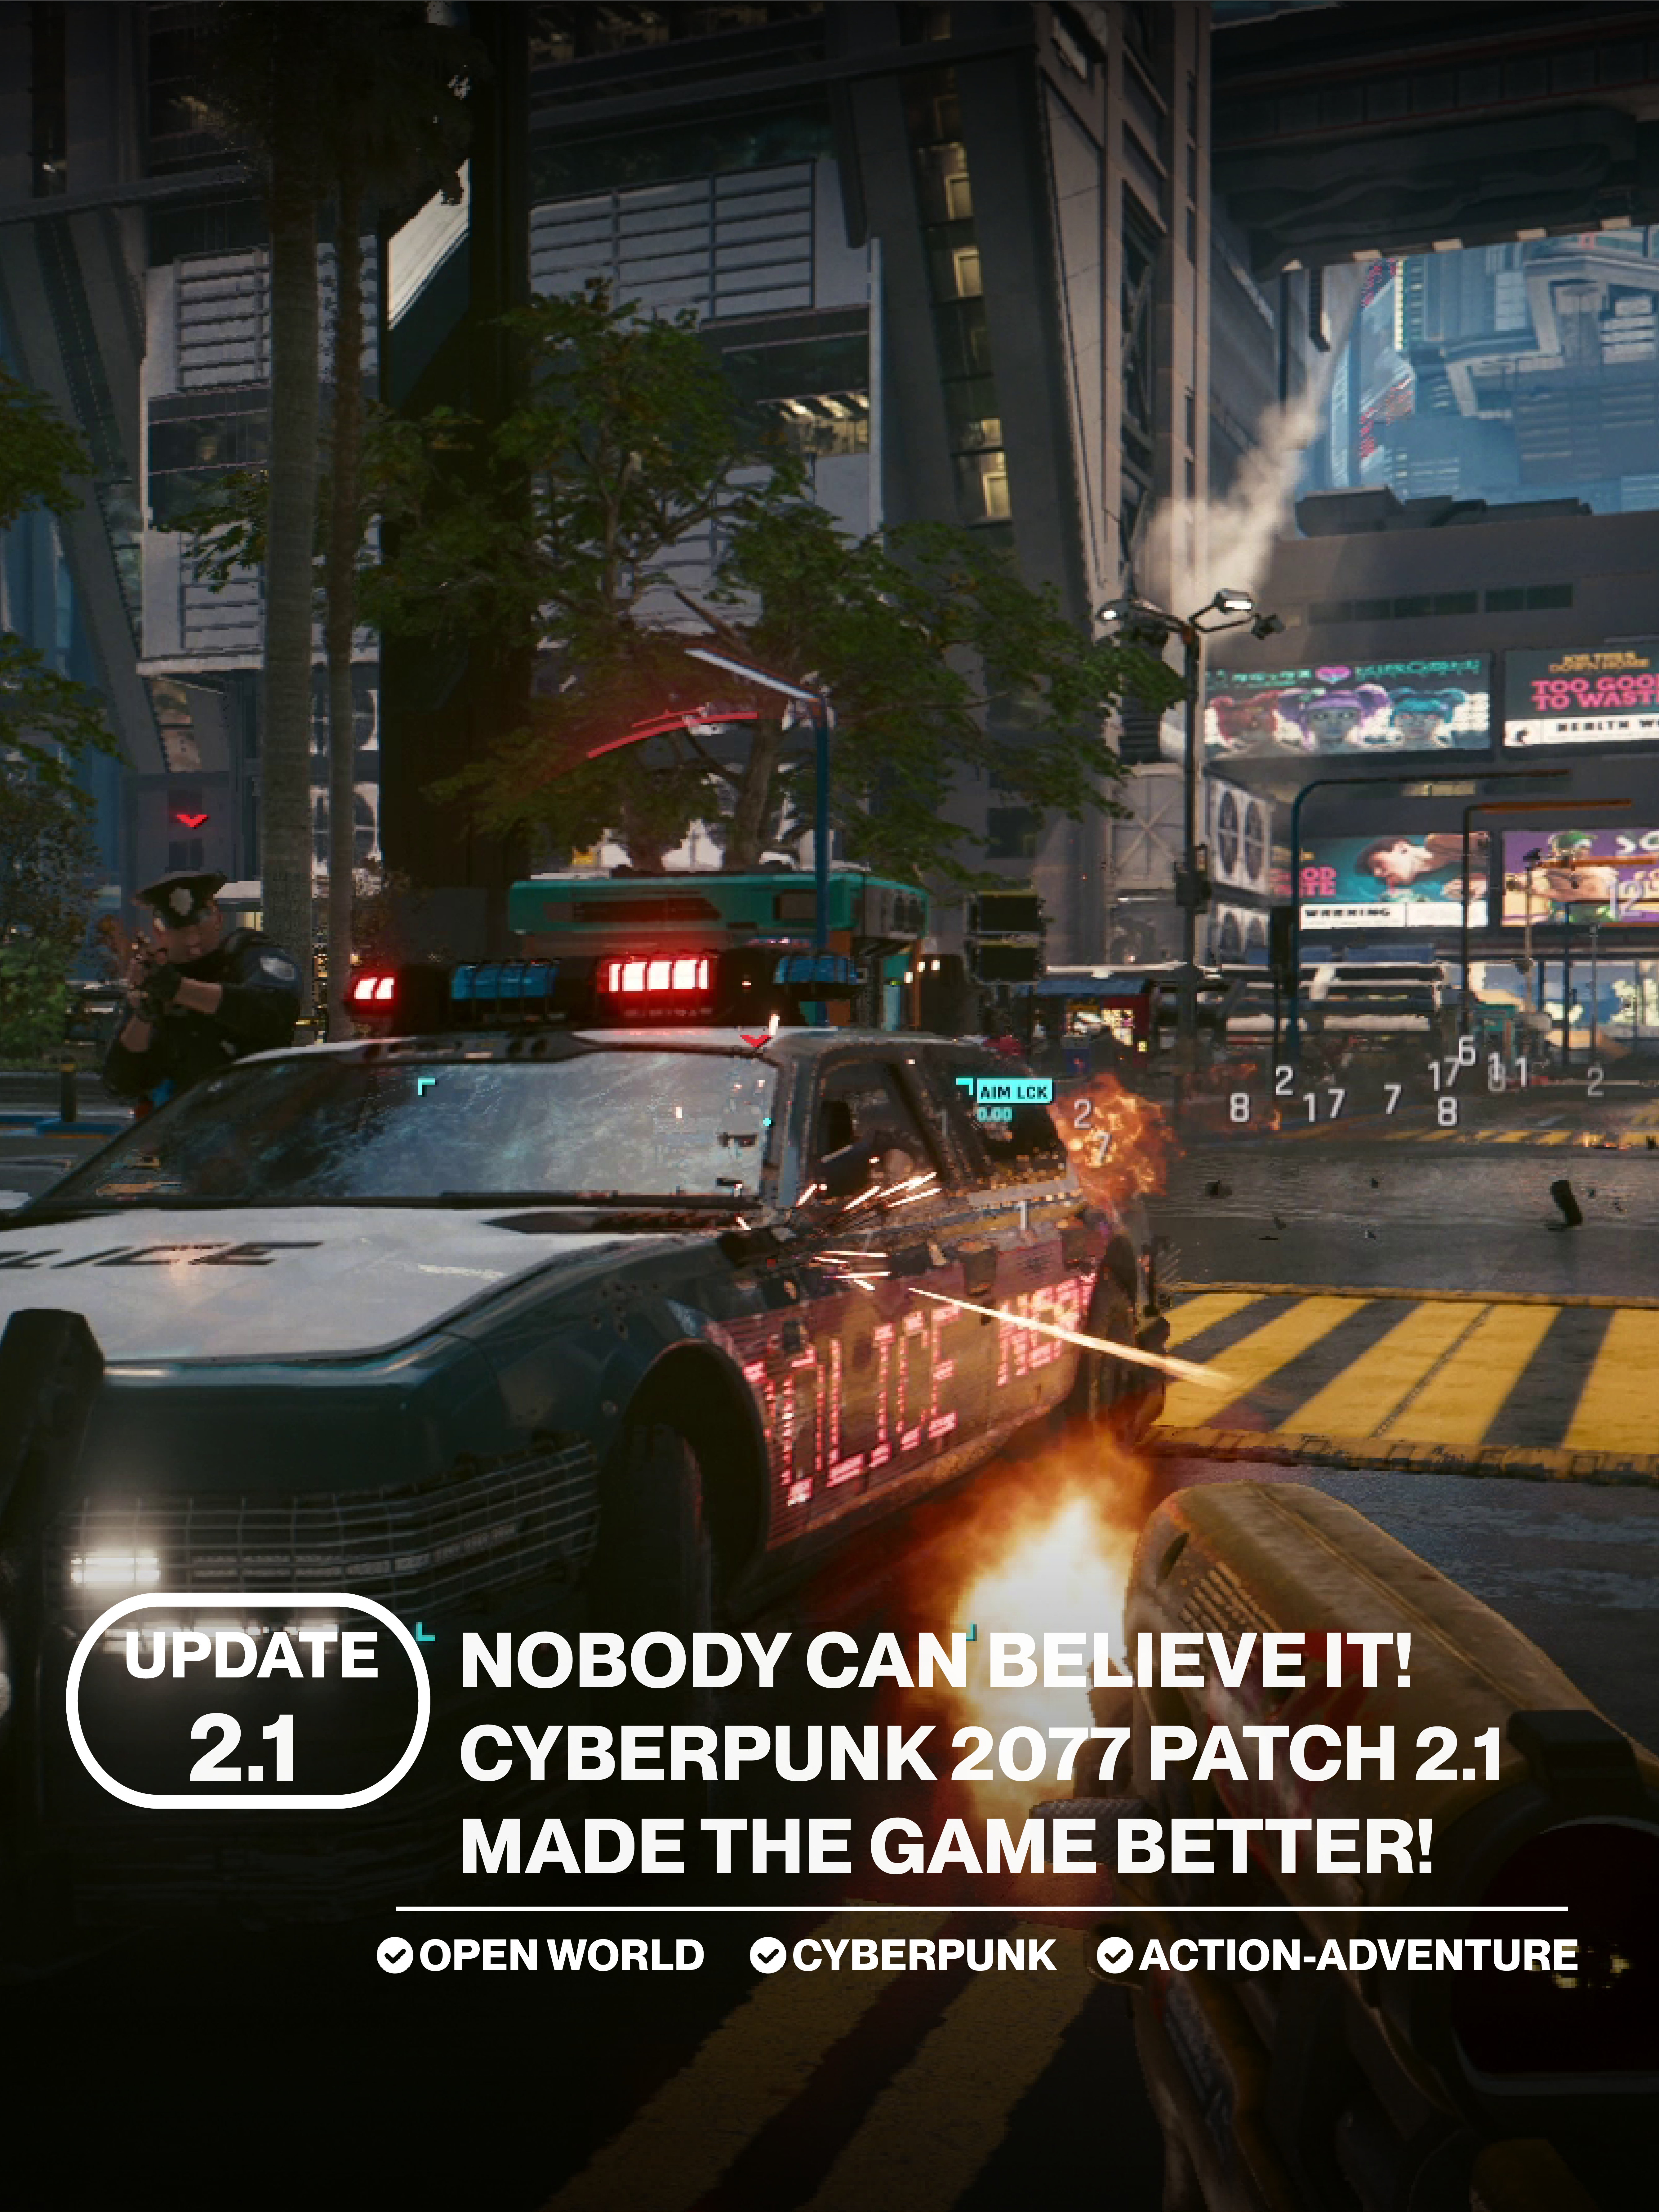 CYBER PUNK 2077 (2.1) It's FINALLY happening!